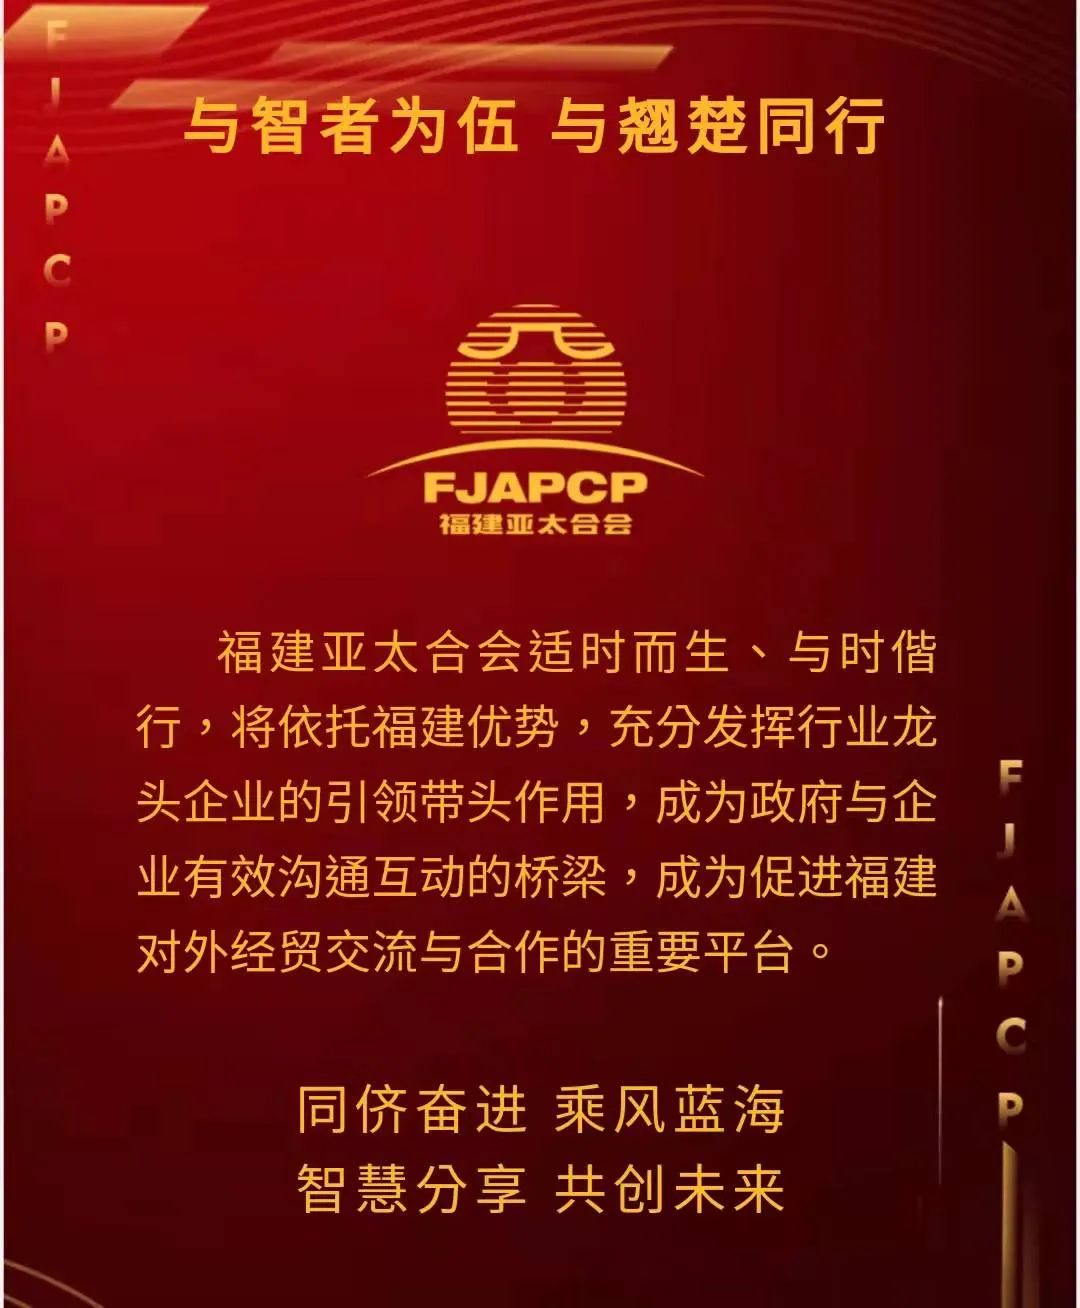 福建亚太合会成立大会与RCEP经贸合作发展促进会议即将举行